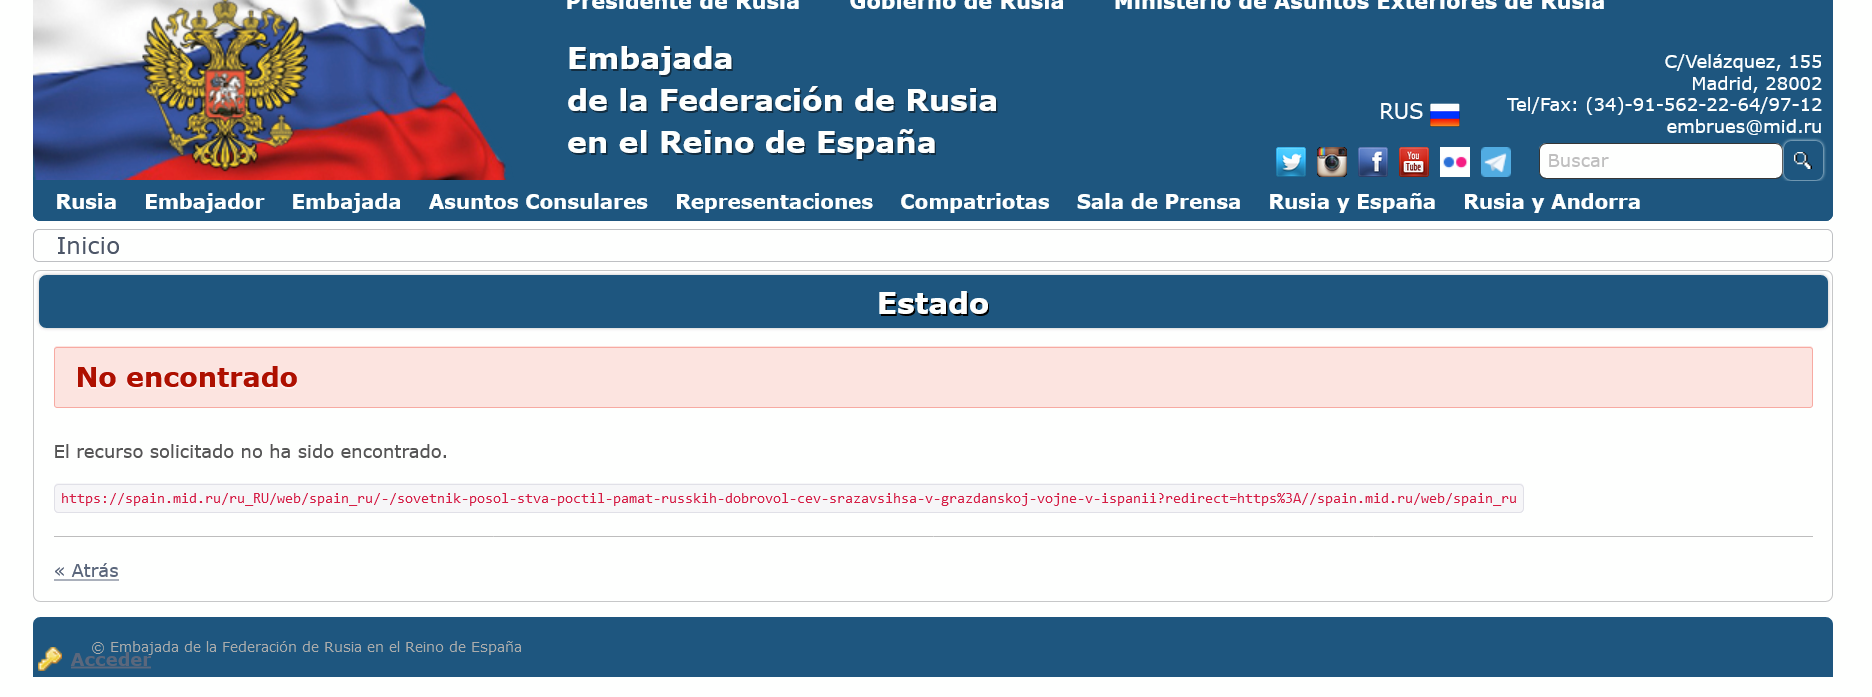 Скриншот публикации посольства РФ в Испании